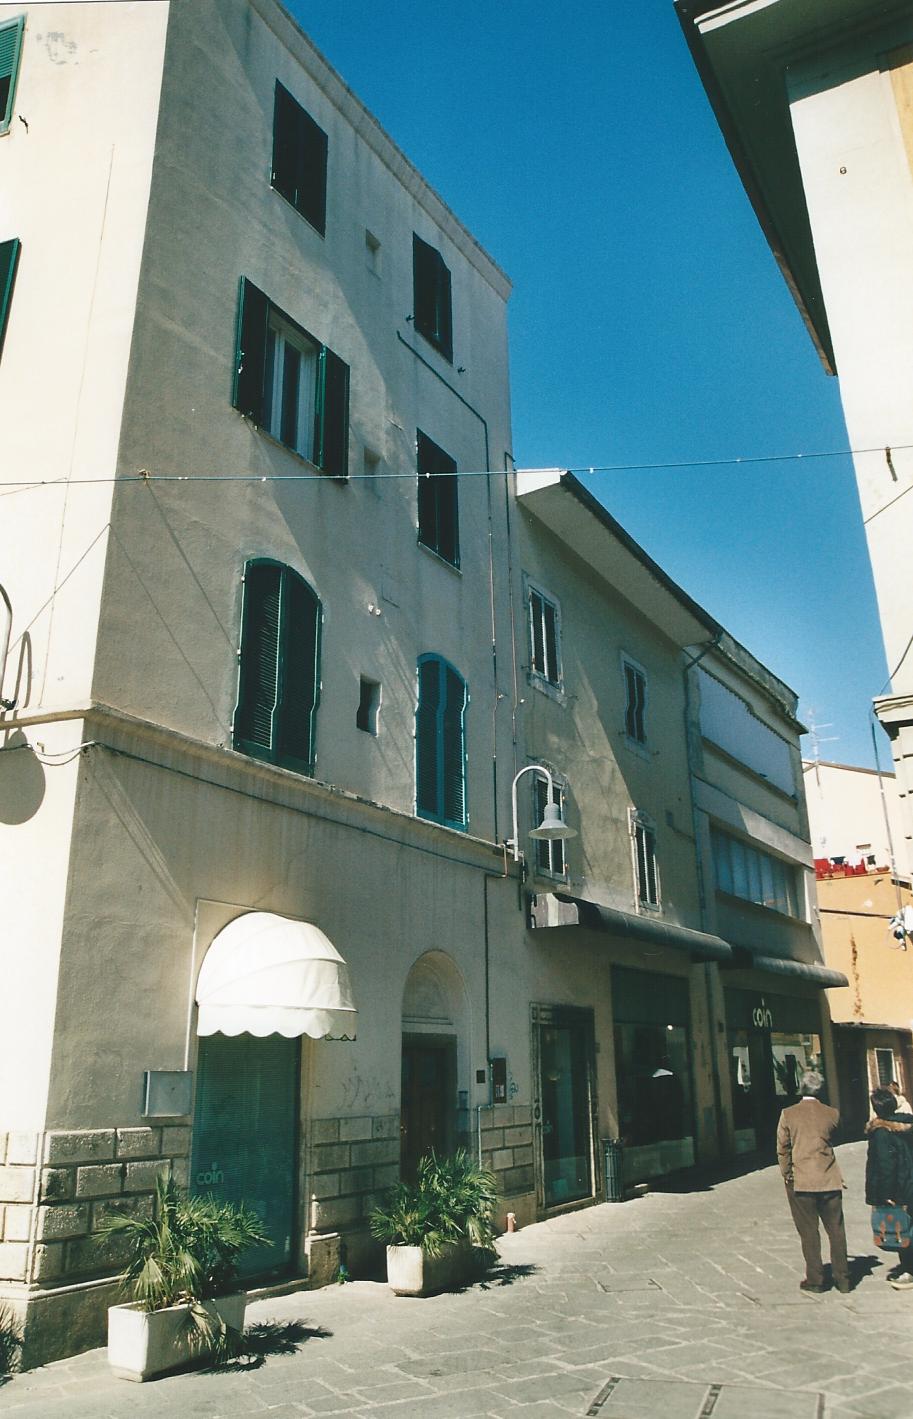 Palazzo Ariosti ora Palazzo Vescovile (palazzo, vescovile) - Grosseto (GR) 